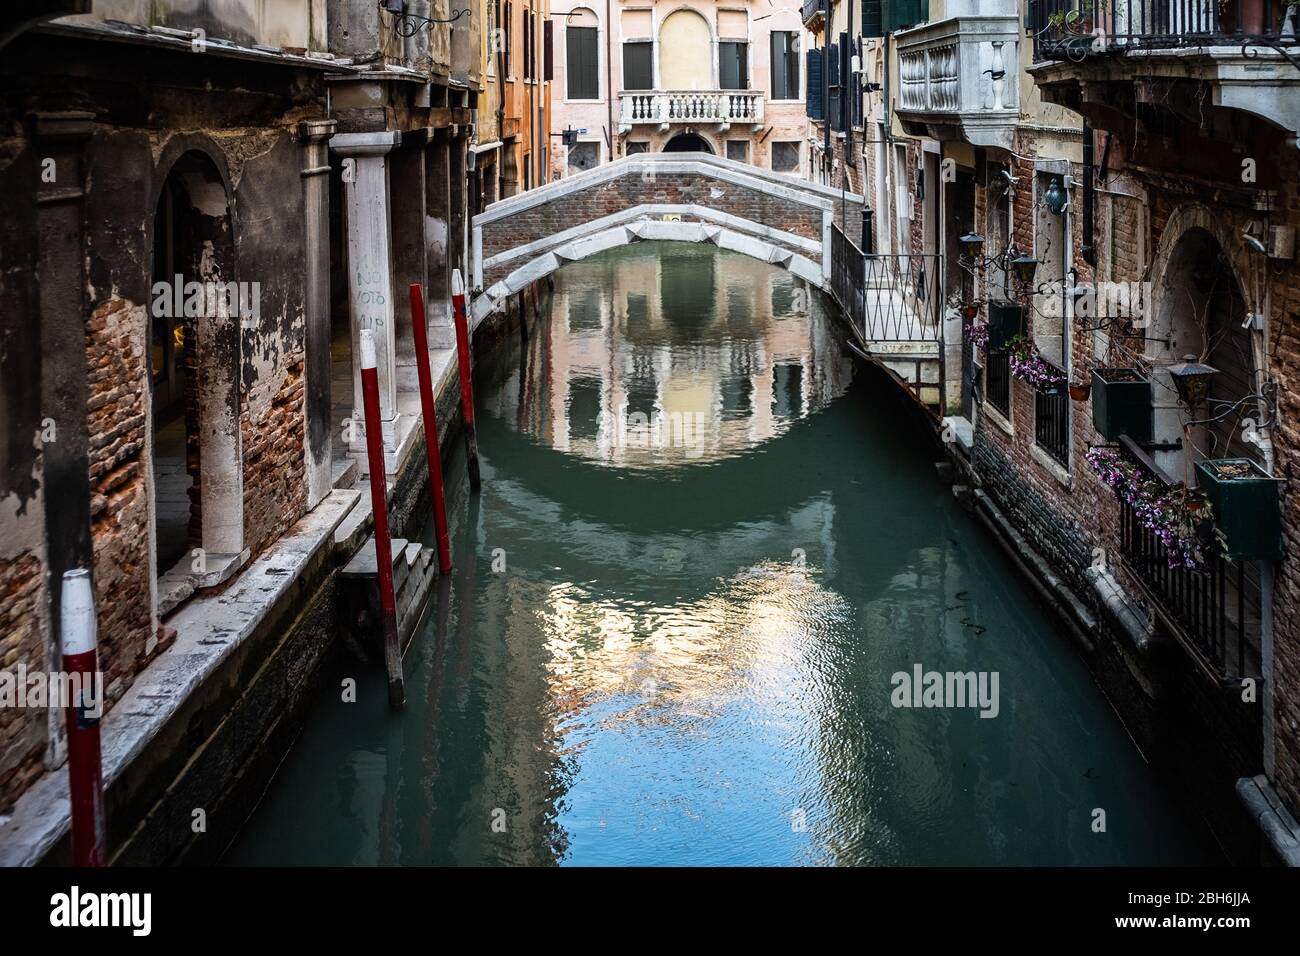 VENEZIA, ITALIA - APRILE 2020: Un canale vuoto durante il blocco nazionale per la pandemia Covid-19. Foto Stock